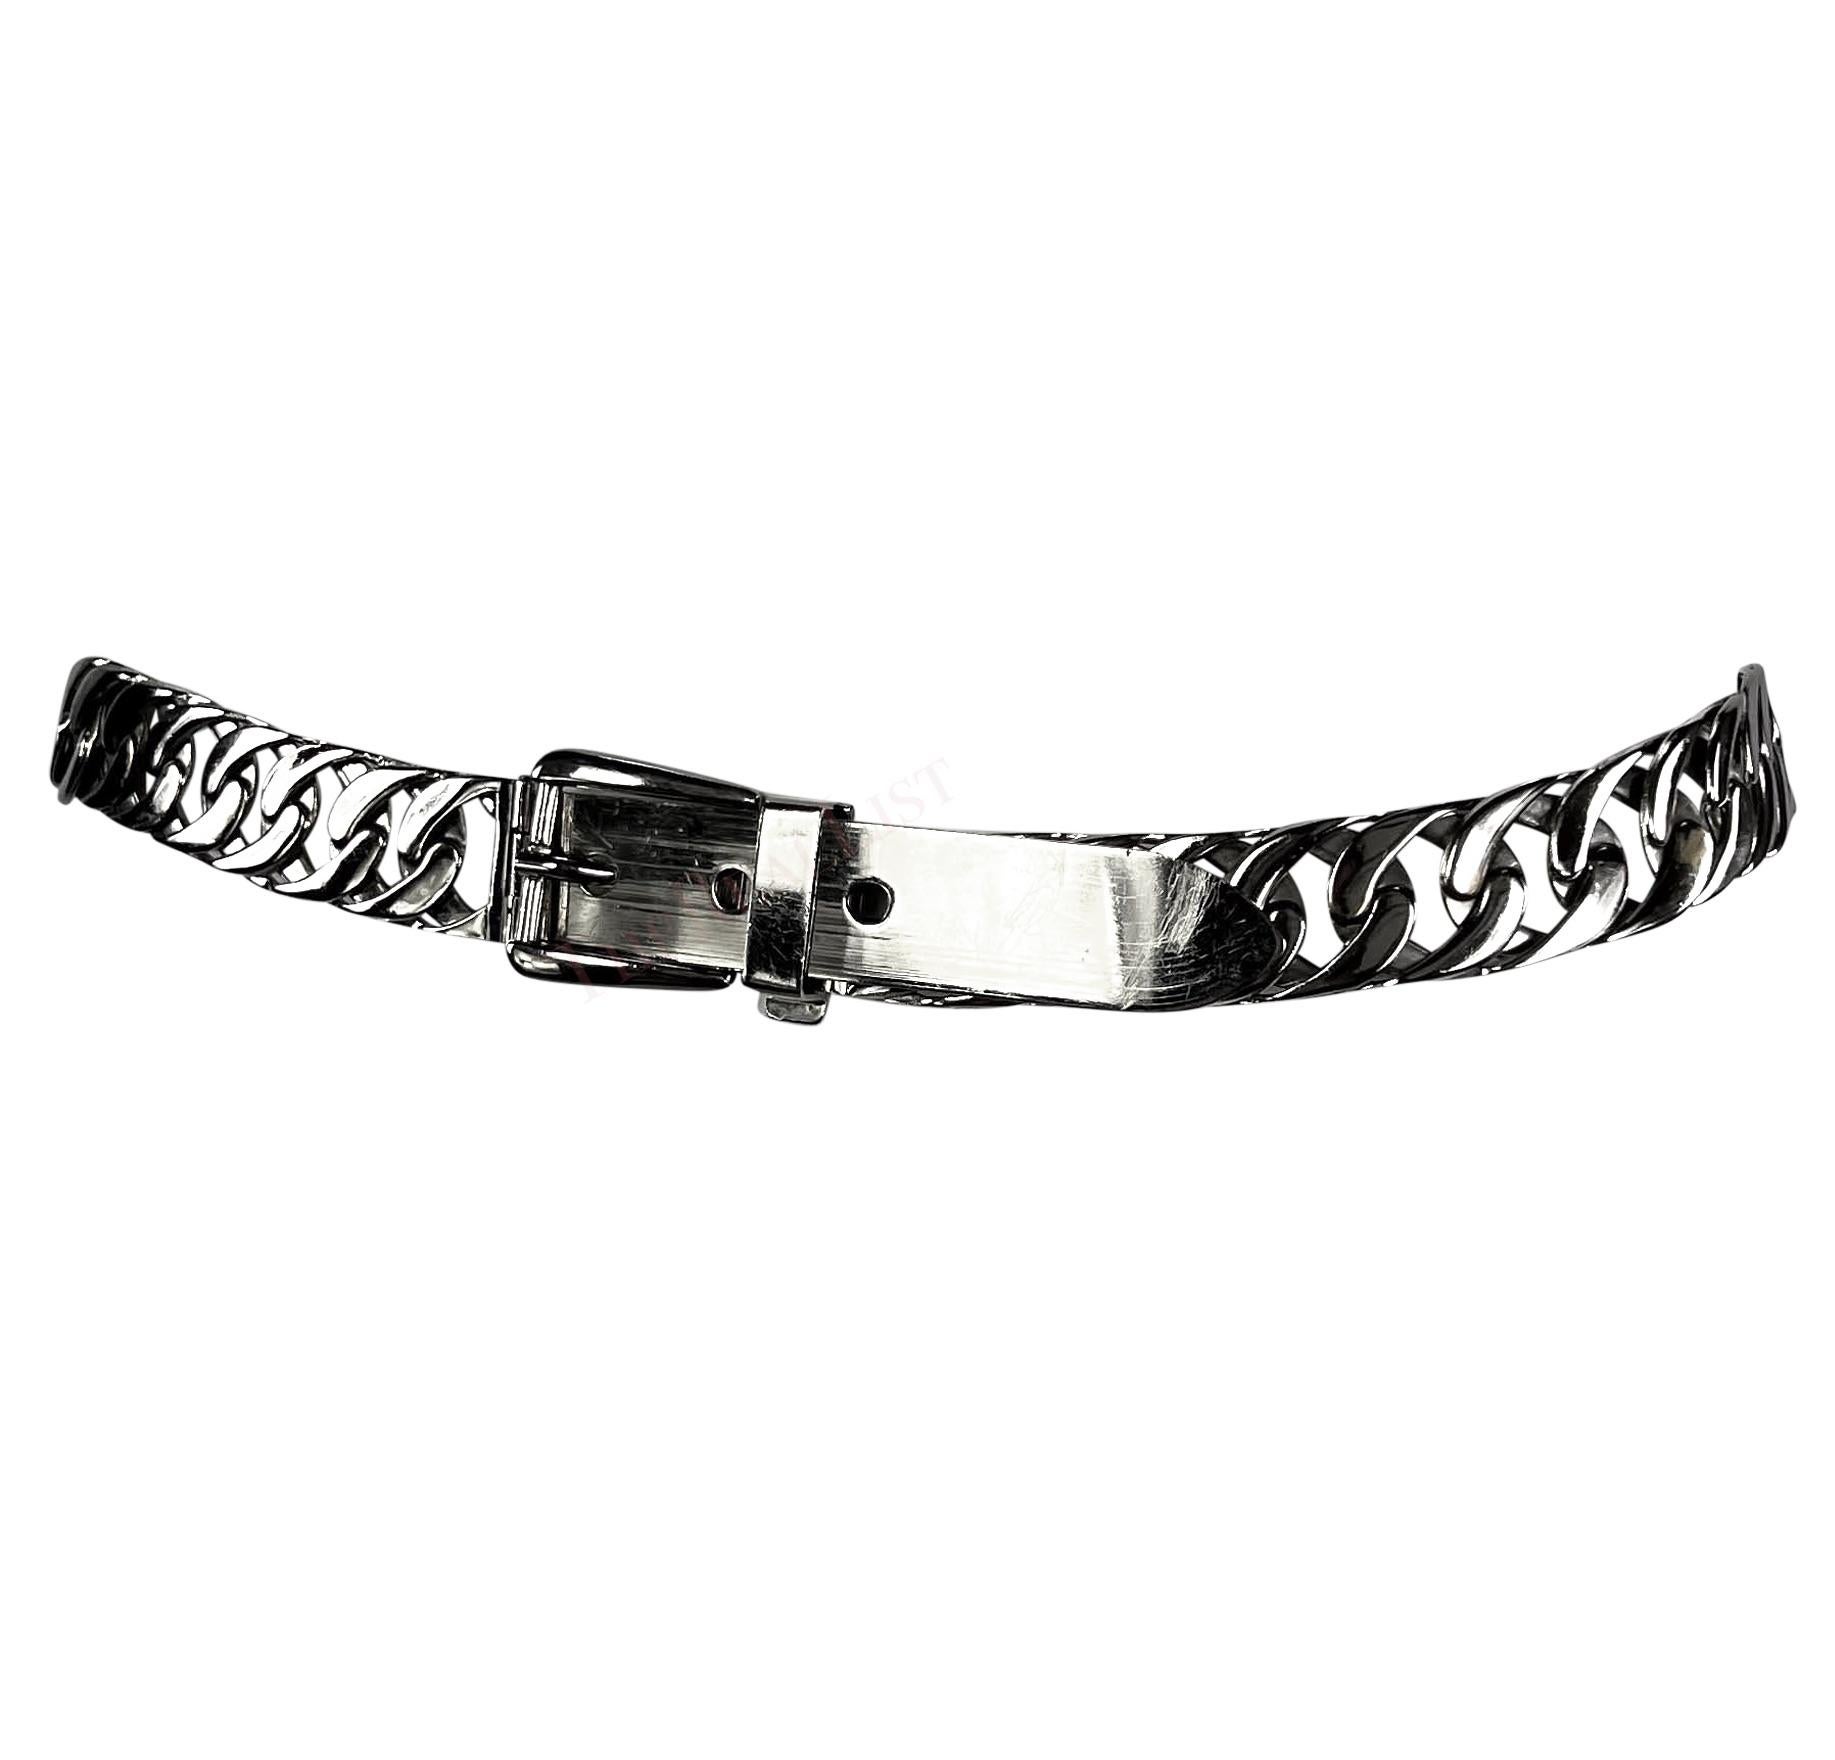 Datant des années 1970, cette ceinture Gucci en chaîne argentée présente un large maillage de chaînes et est ornée d'une boucle classique. 

Mesures approximatives : 
Taille - non répertoriée
Largeur : 1